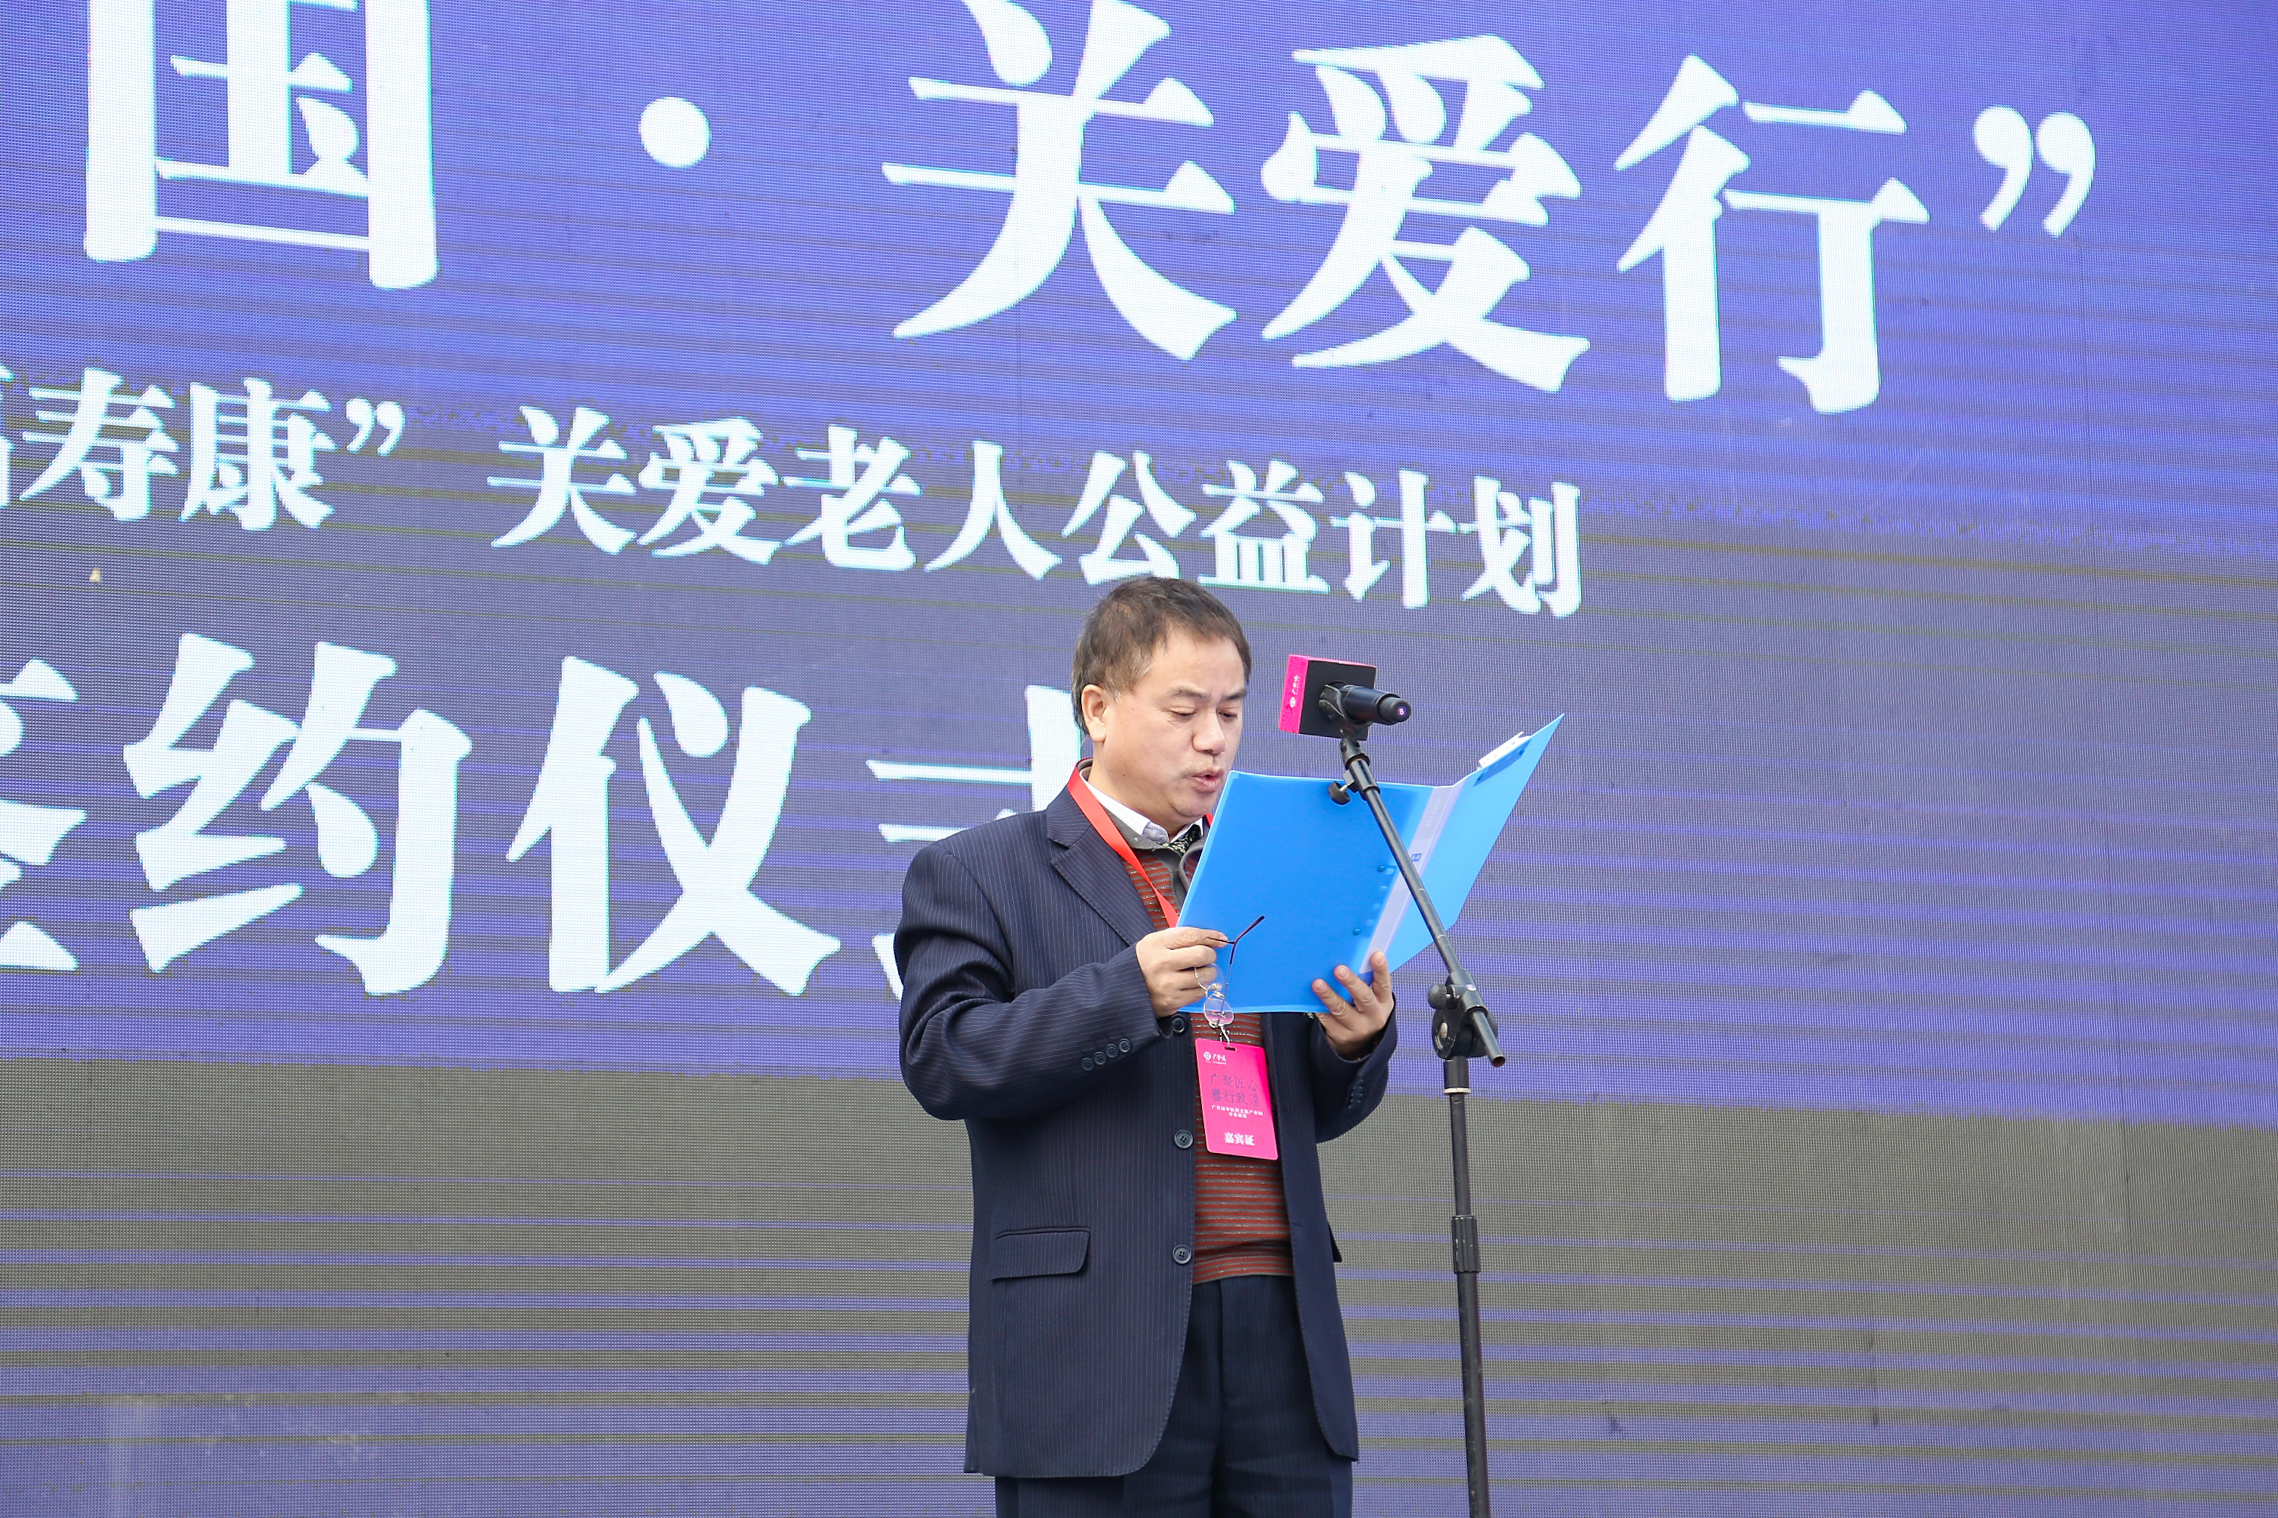 “健康中国•关爱行”—广誉远物资捐赠仪式于2018年10月19日在山西太原举办(图2)